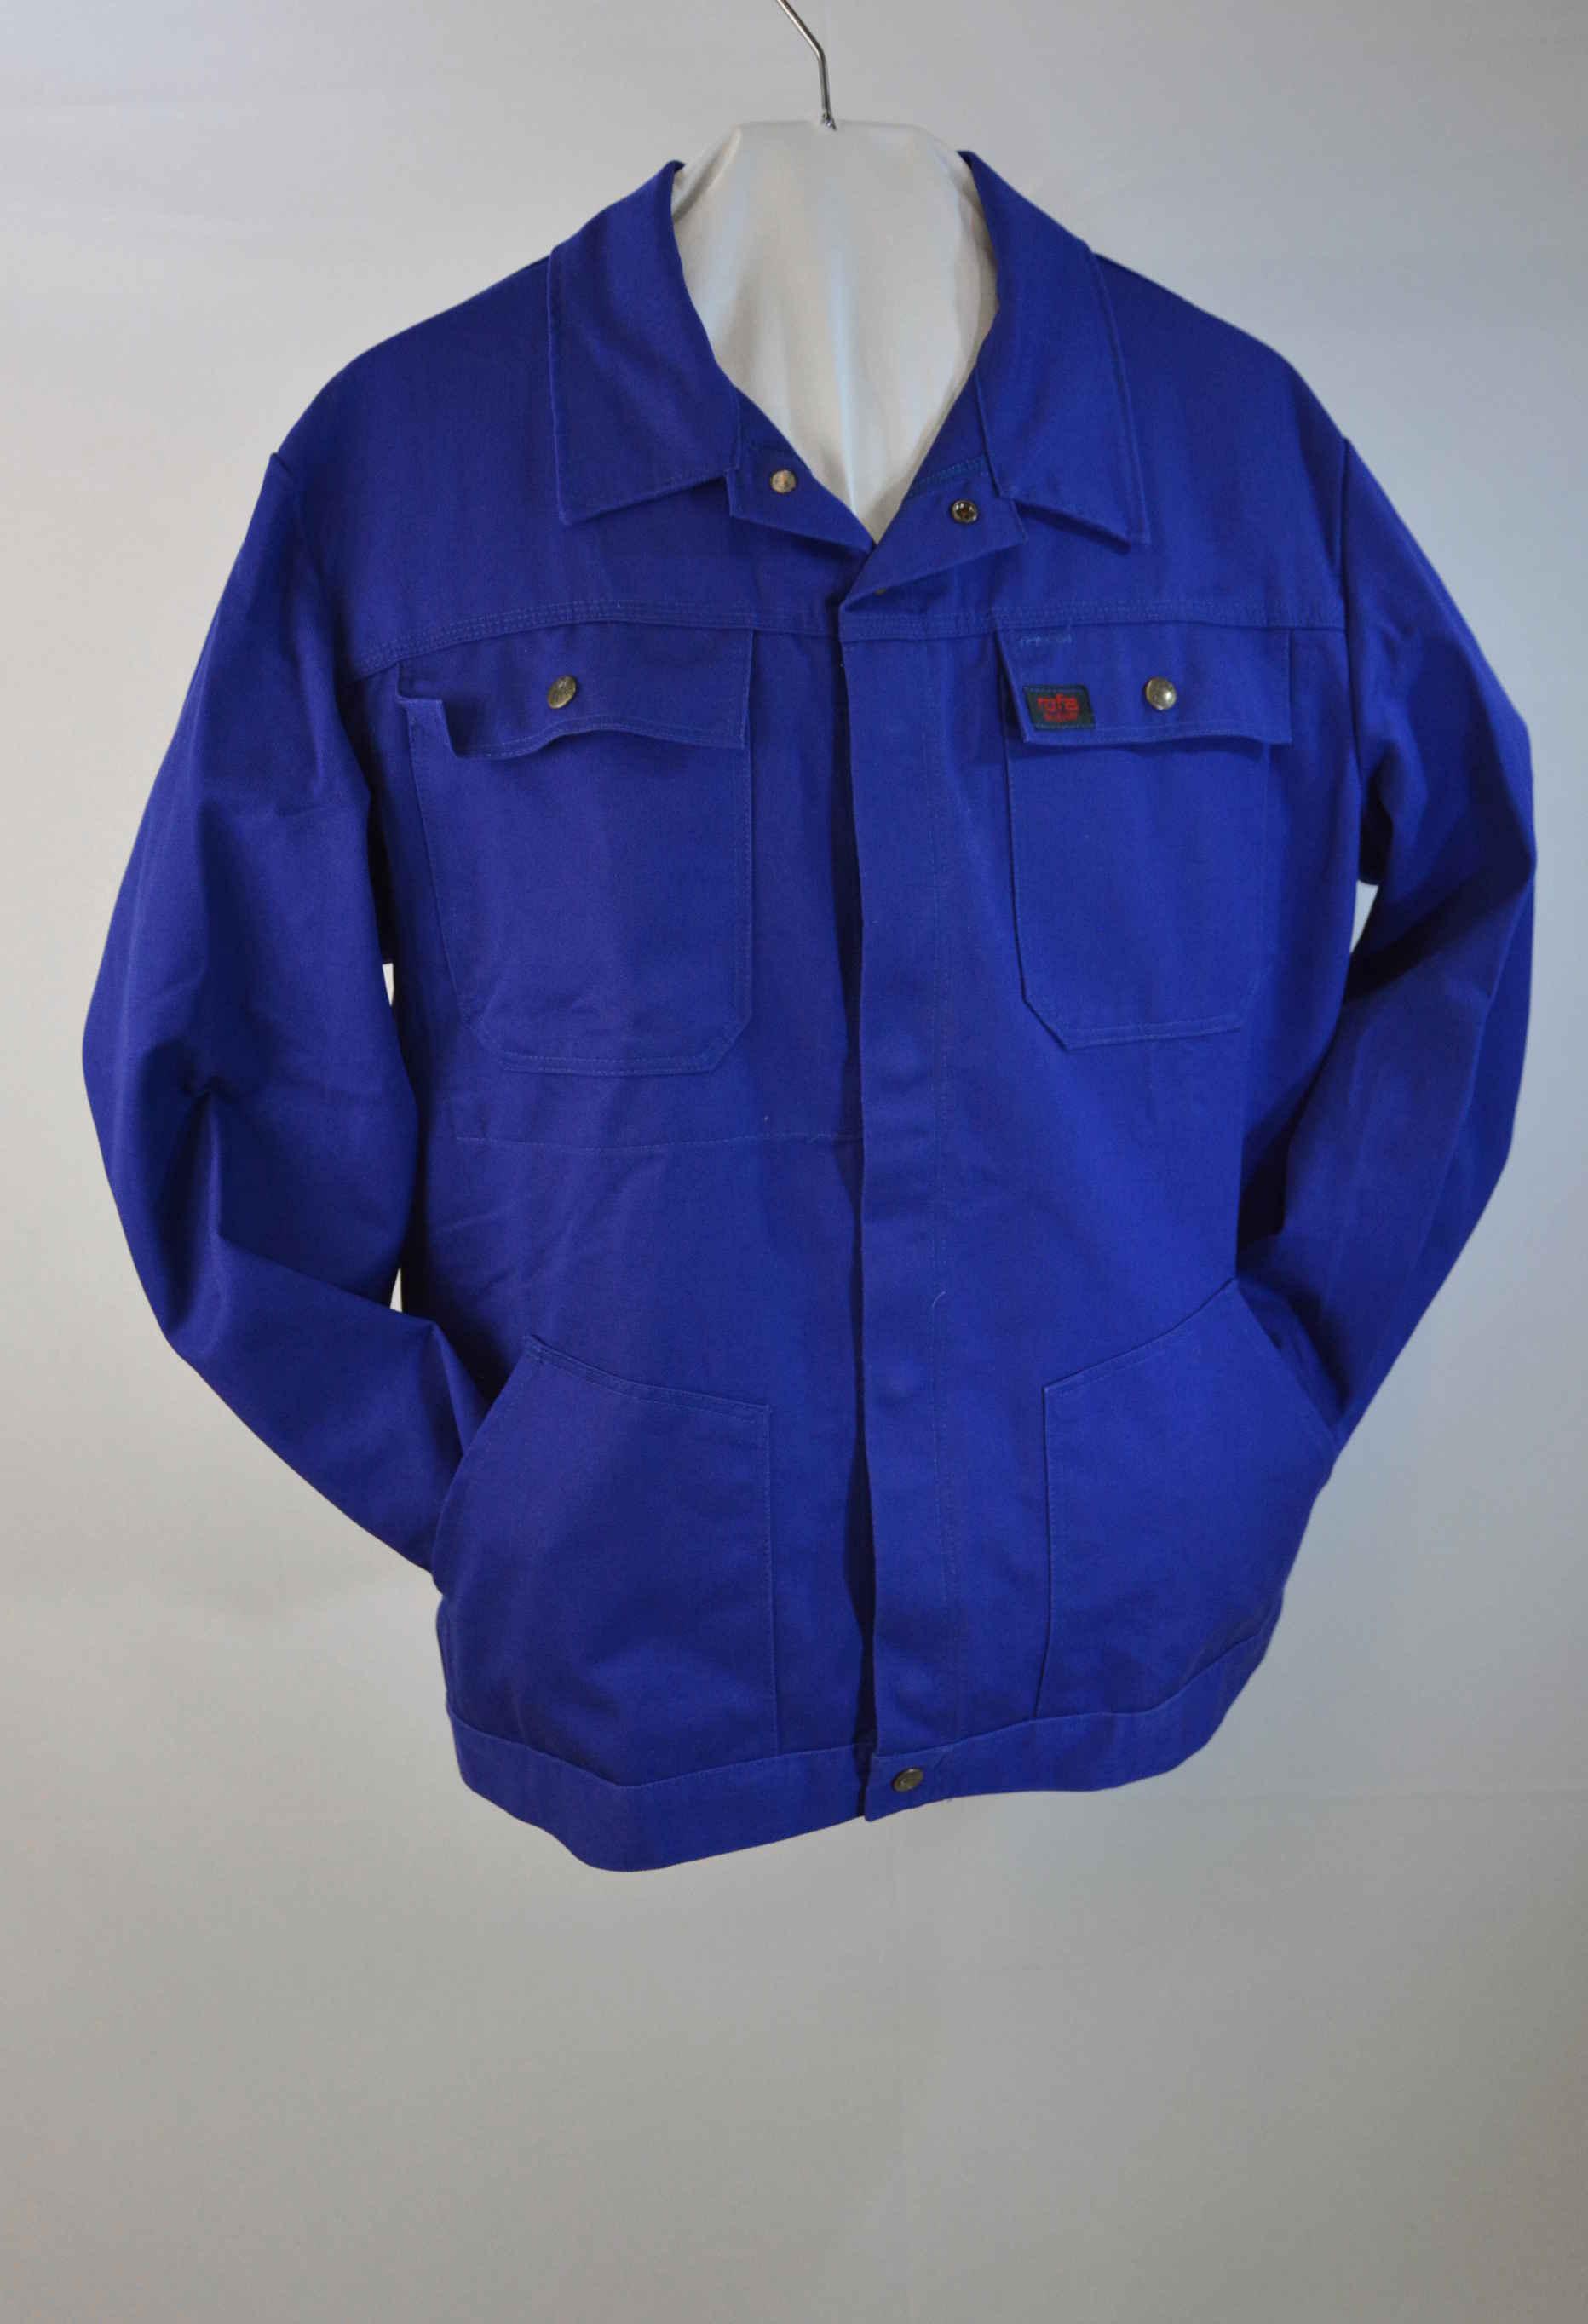 Arbeitsjacke mit zwei Brusttaschen in dunkelkornblau